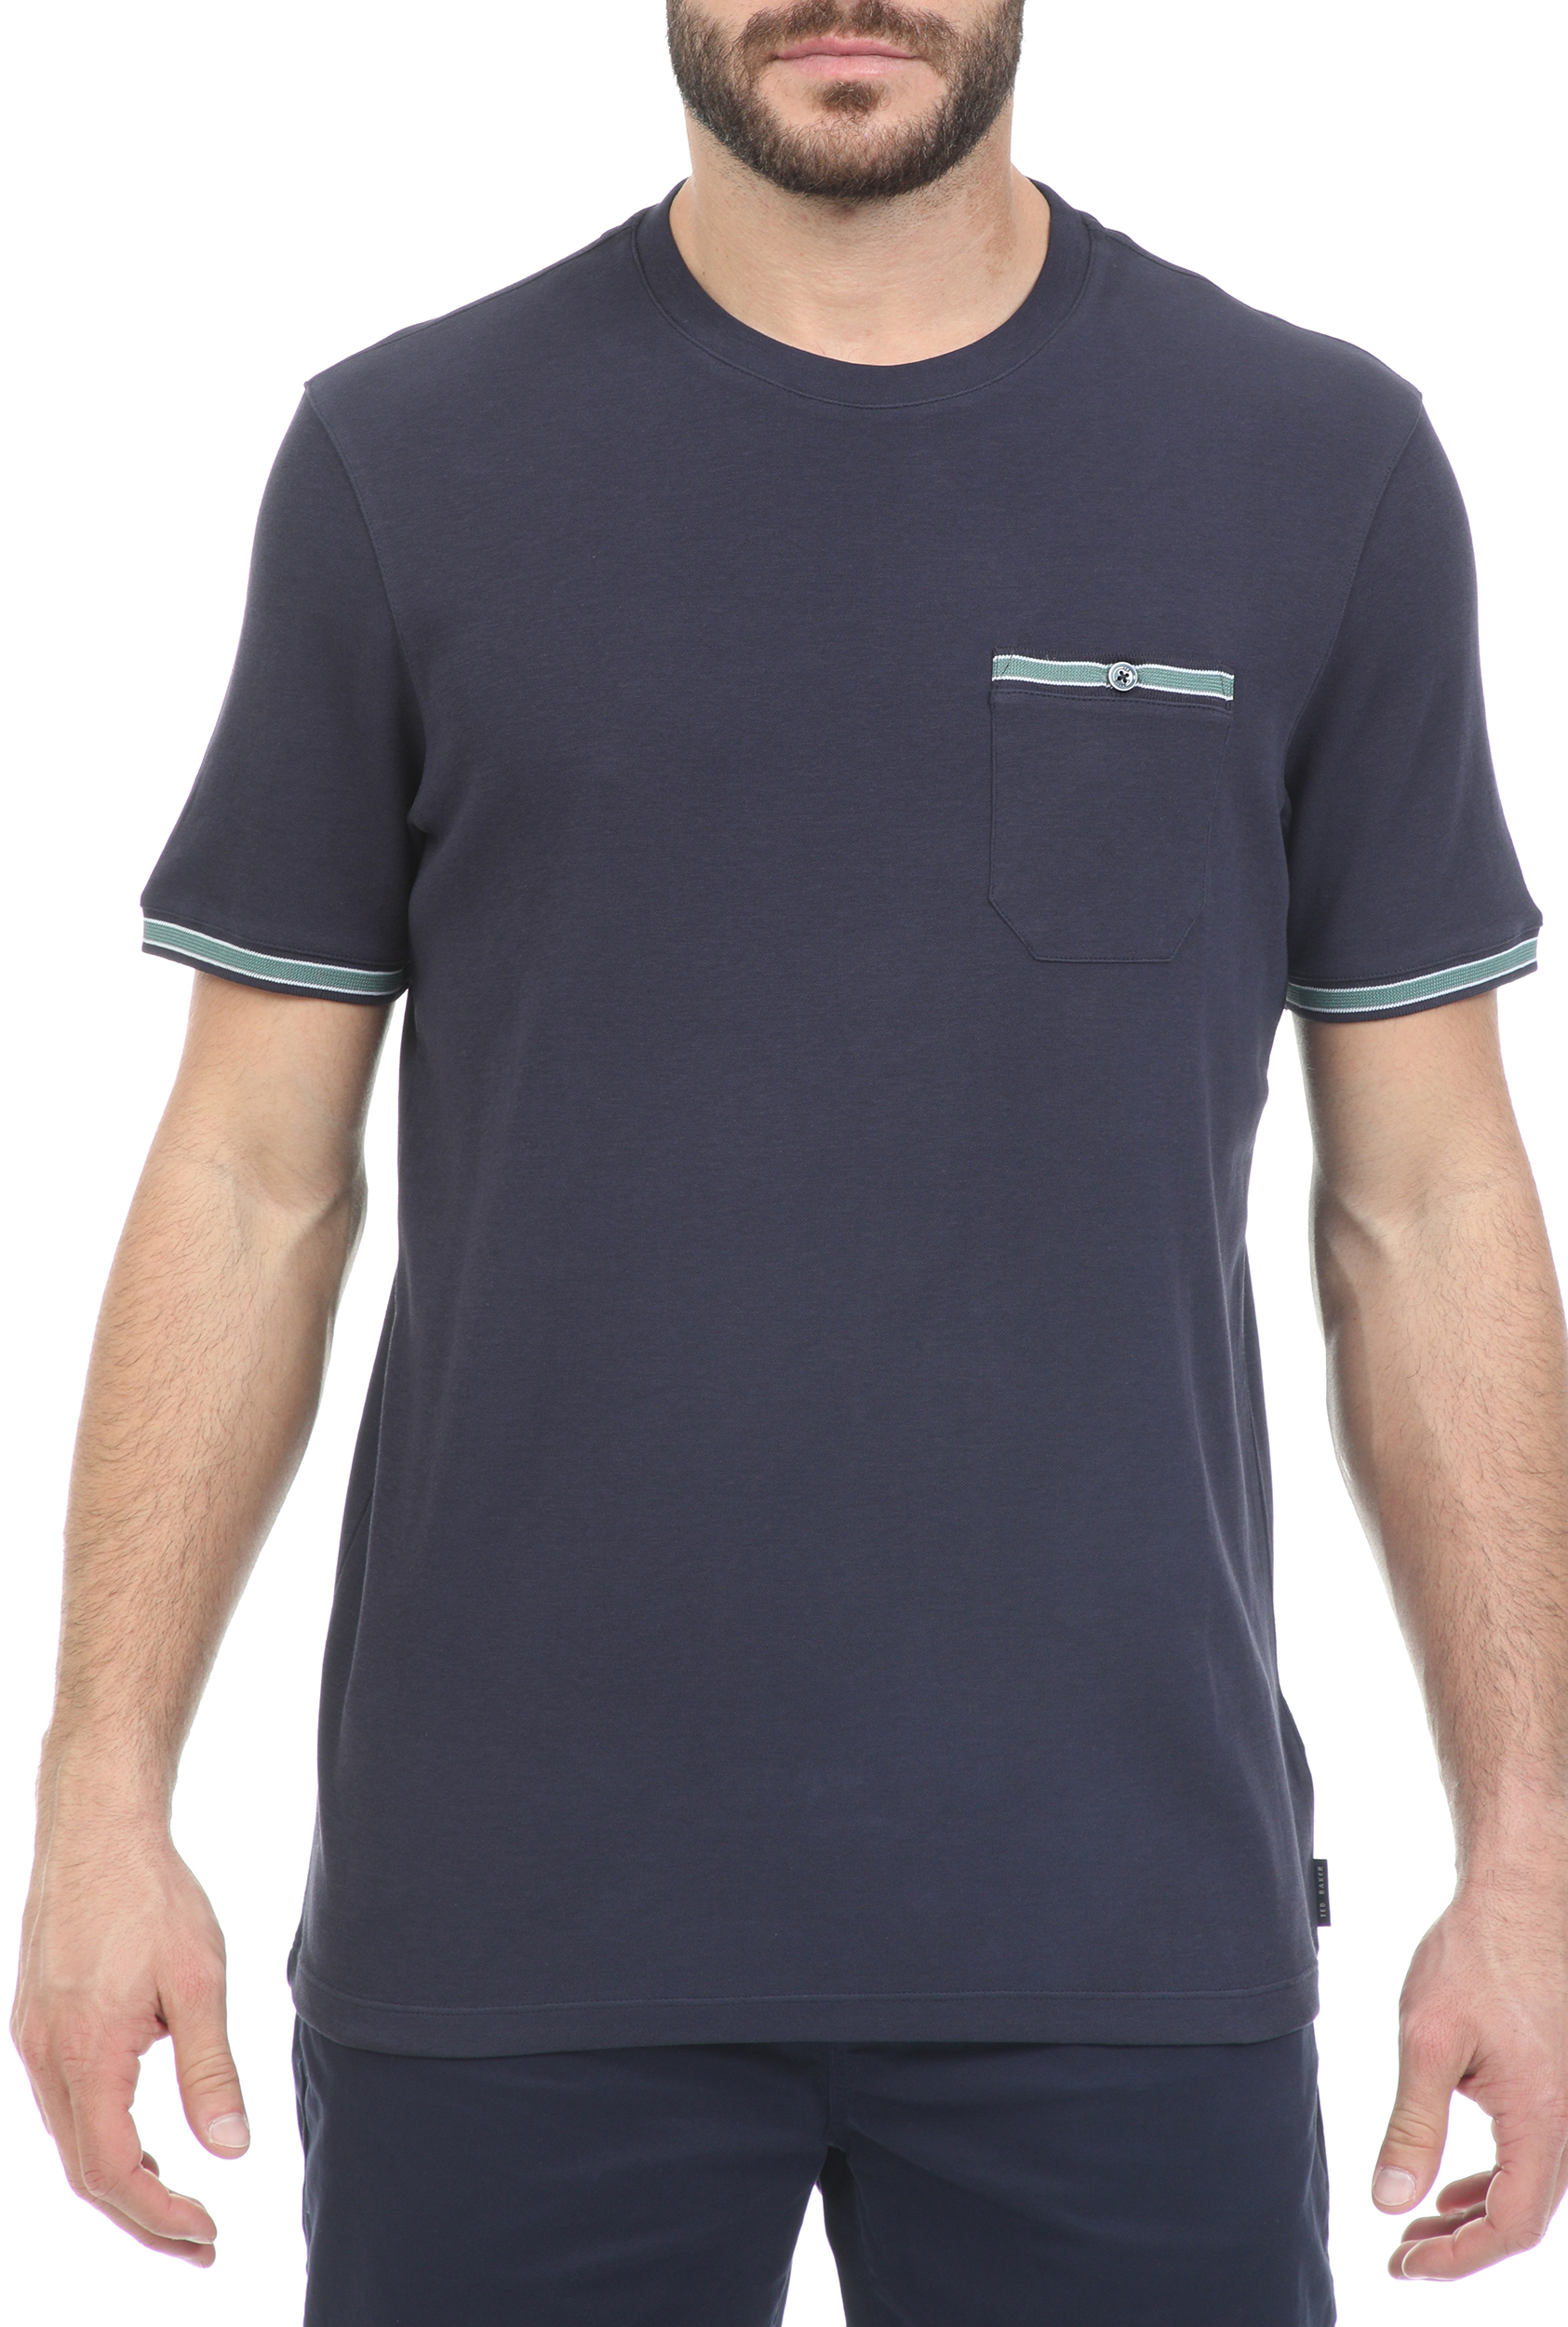 Ανδρικά/Ρούχα/Μπλούζες/Κοντομάνικες TED BAKER - Ανδρικό t-shirt TED BAKER KHAOS μπλε